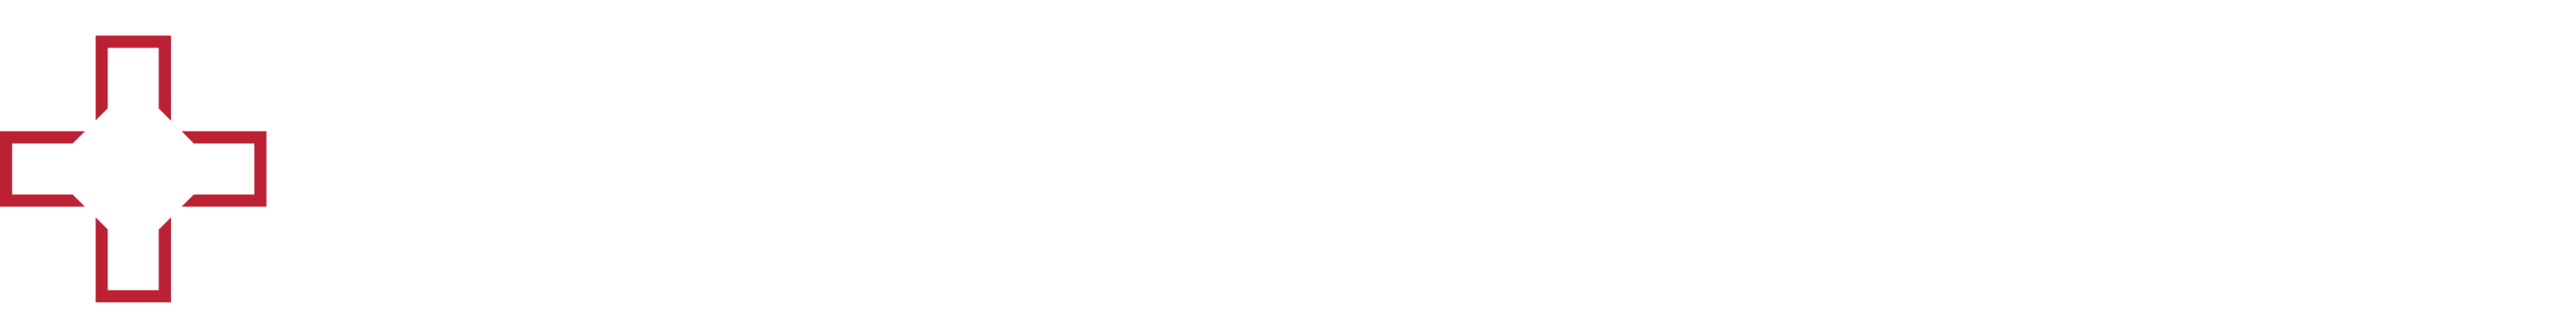 Logo Interieursuisse Businesspartner